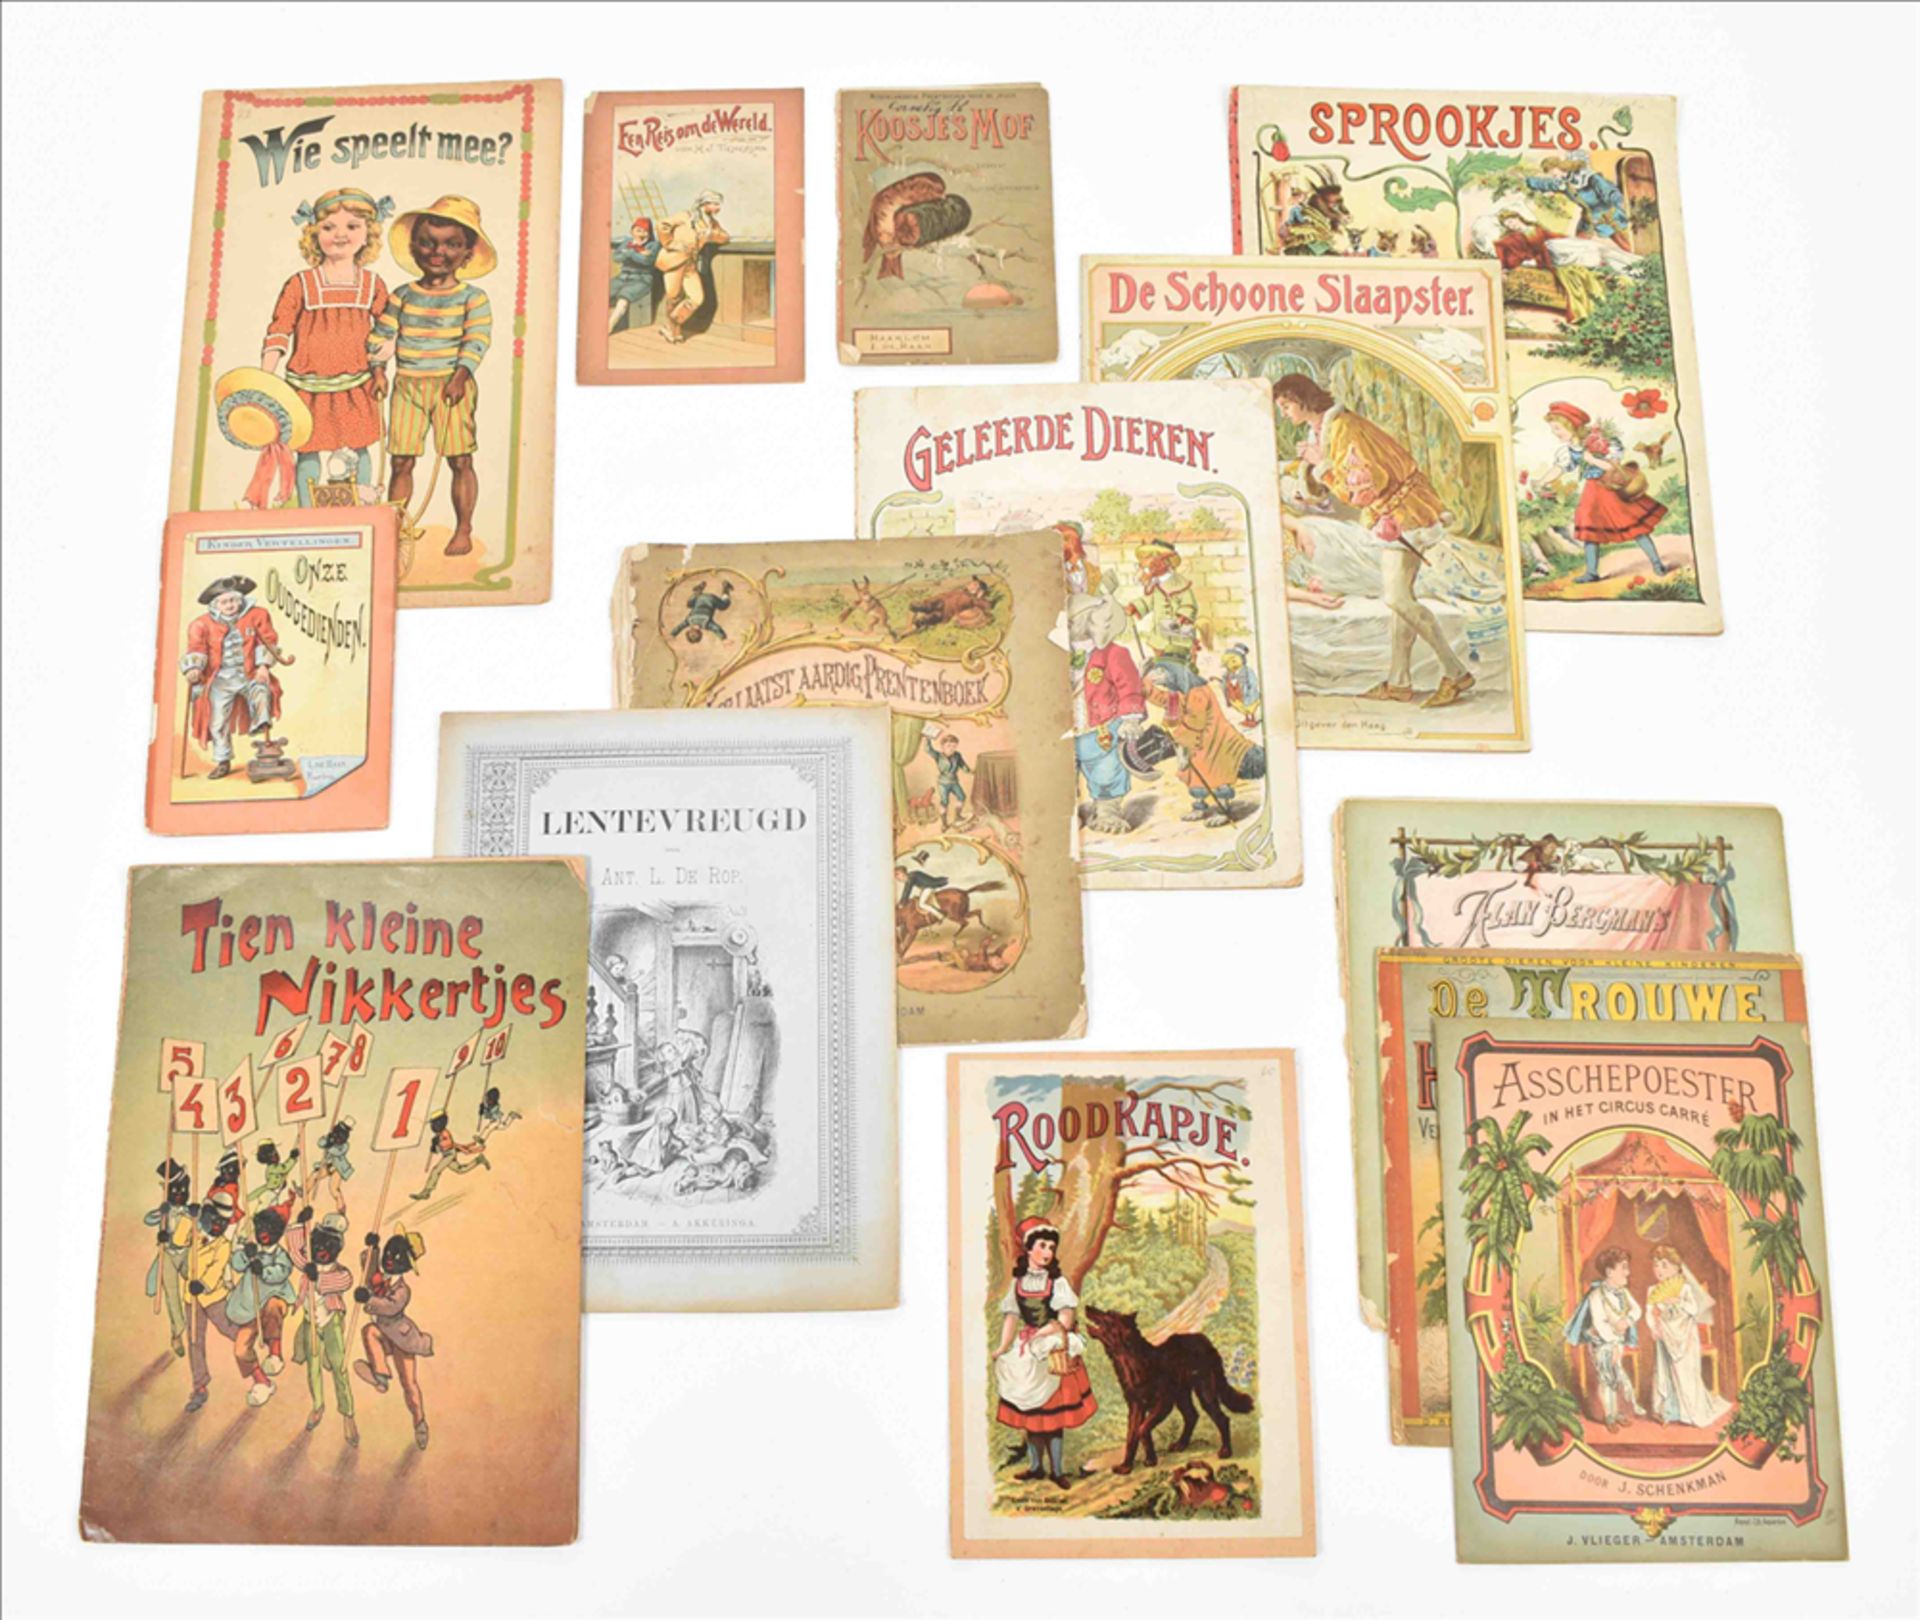 [Black interest] Fourteen late 19th century Dutch children's books: (1) Tien kleine nikkertjes - Image 2 of 16